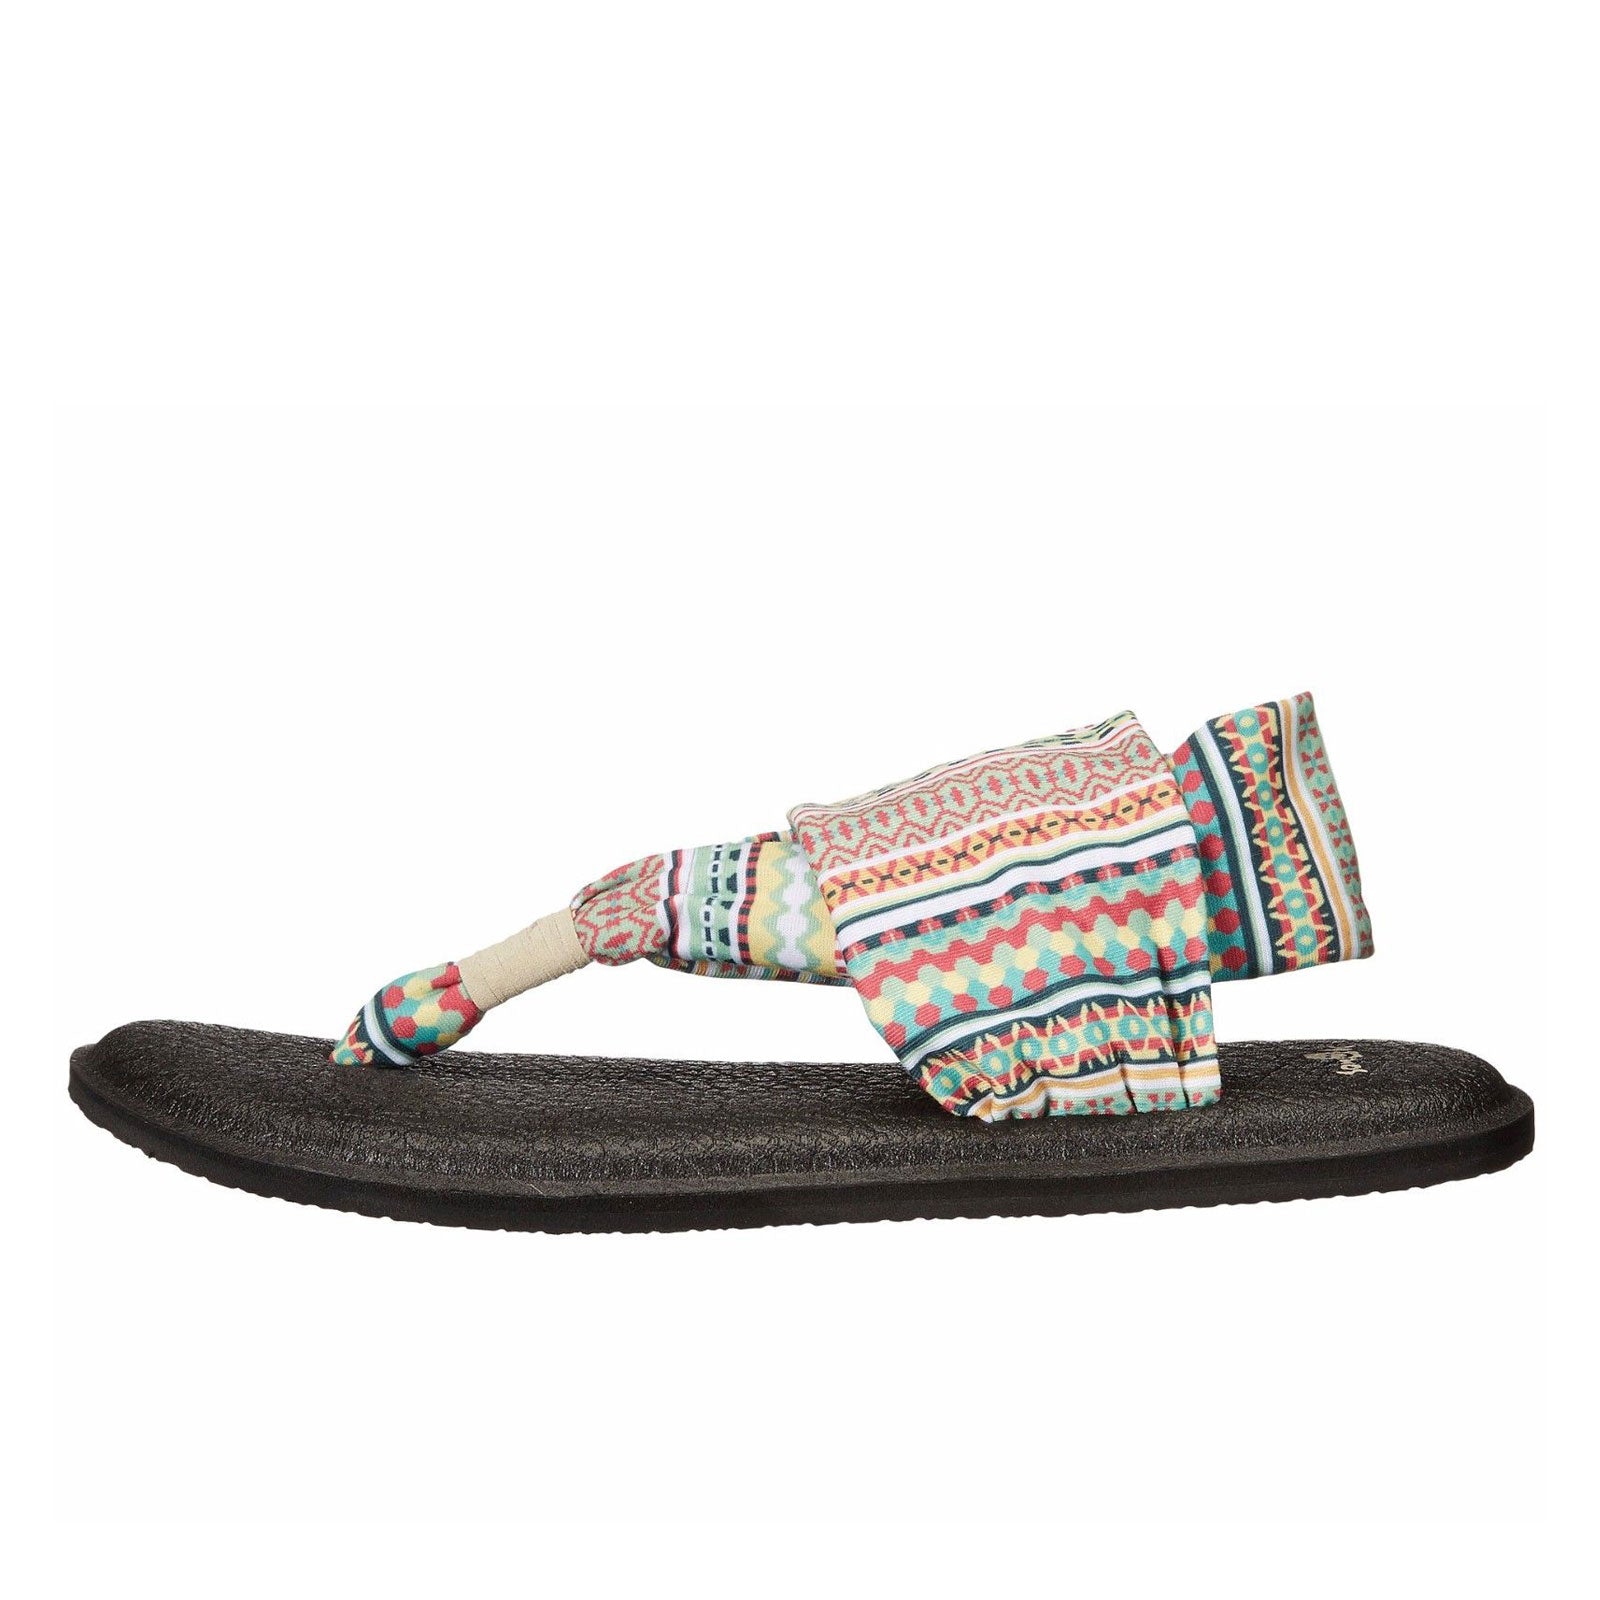 Sanuk Yoga Sling 2 – Milano Shoes